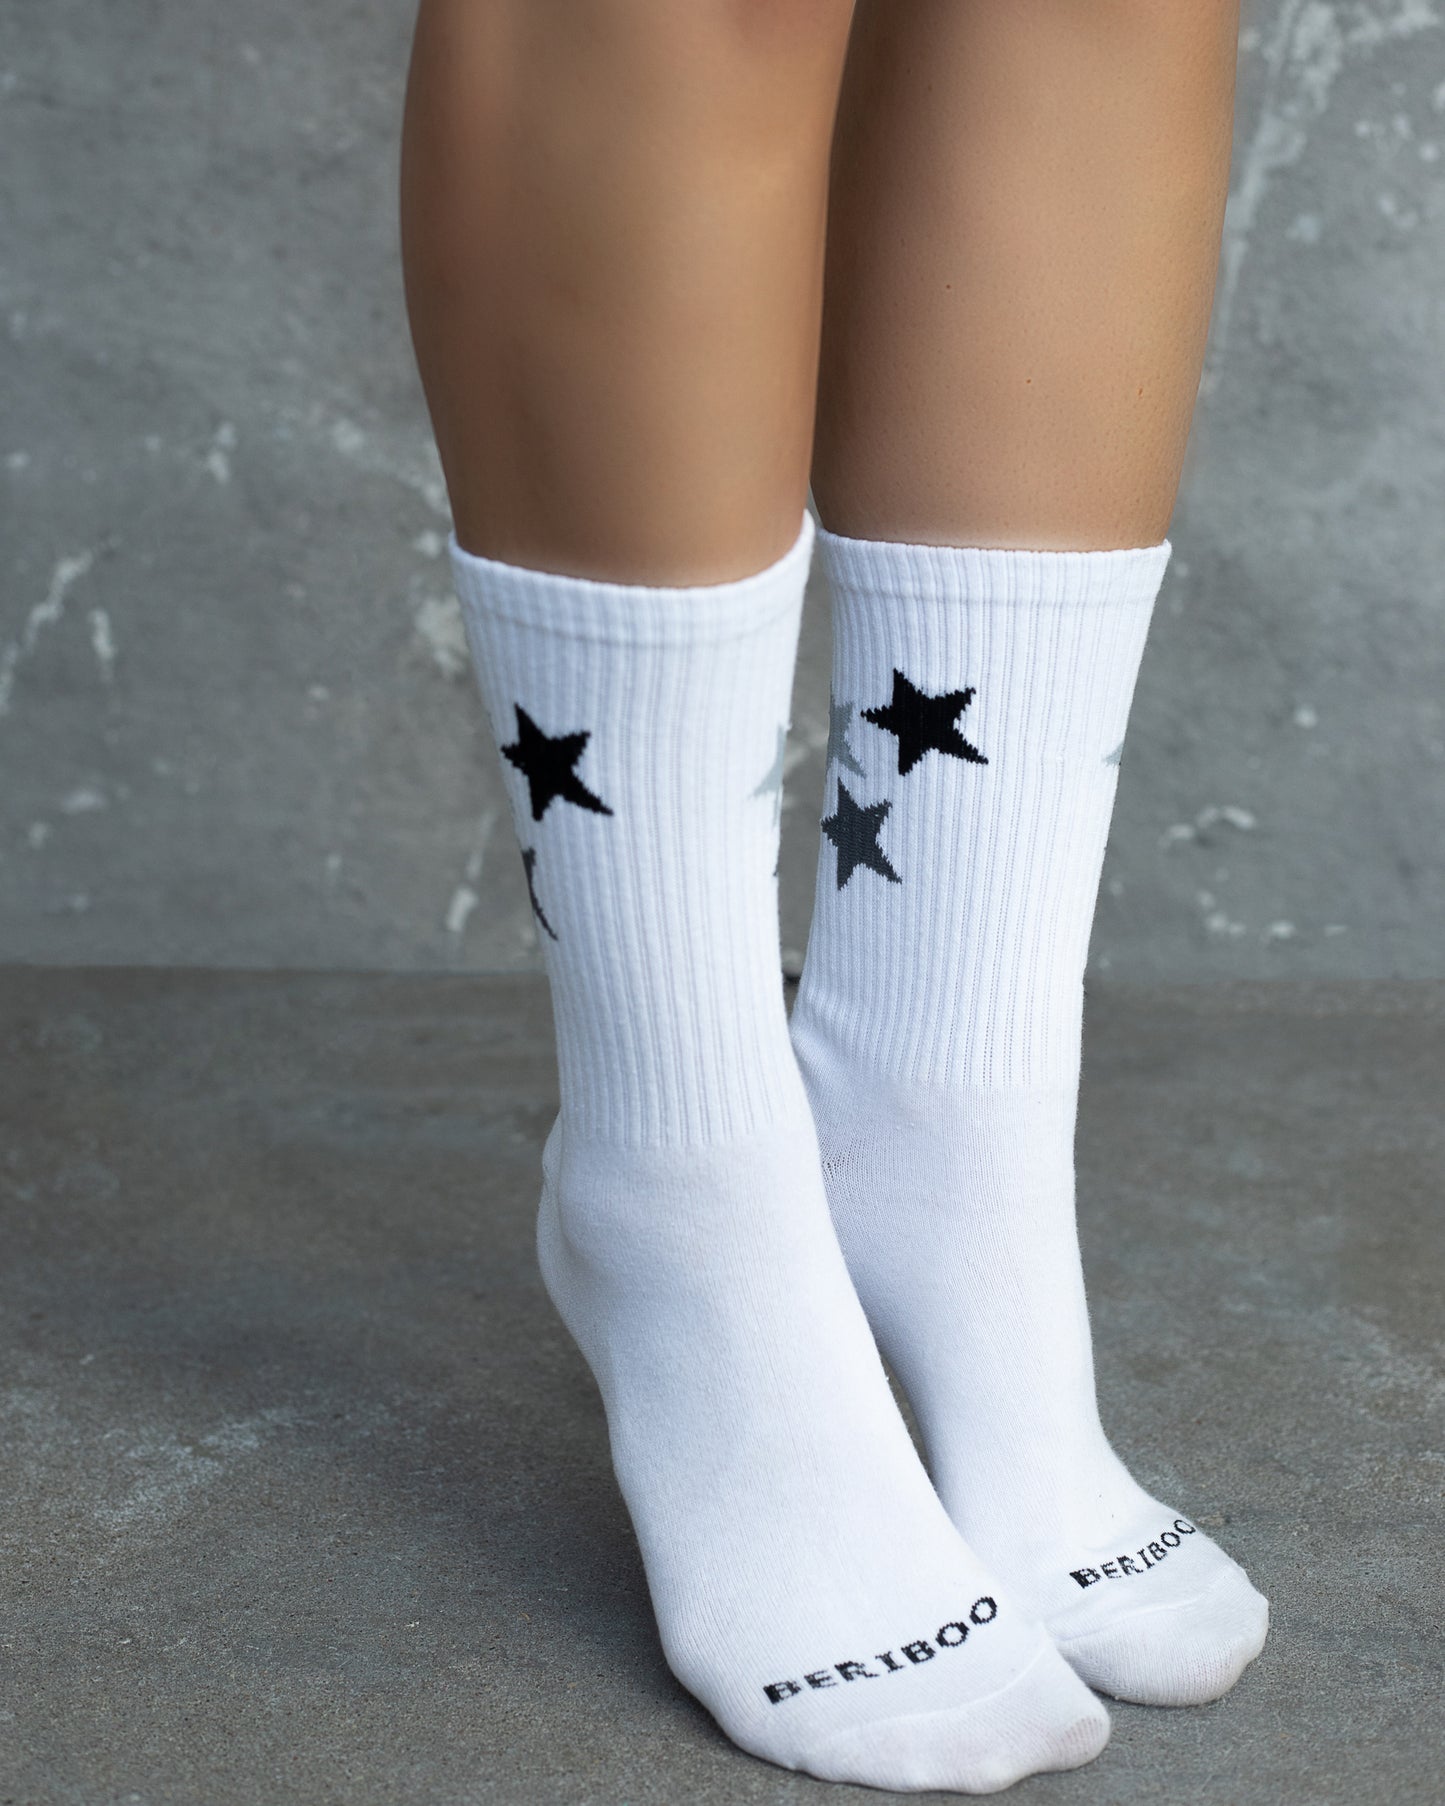 Moteriškos kojinės su žvaigždėmis